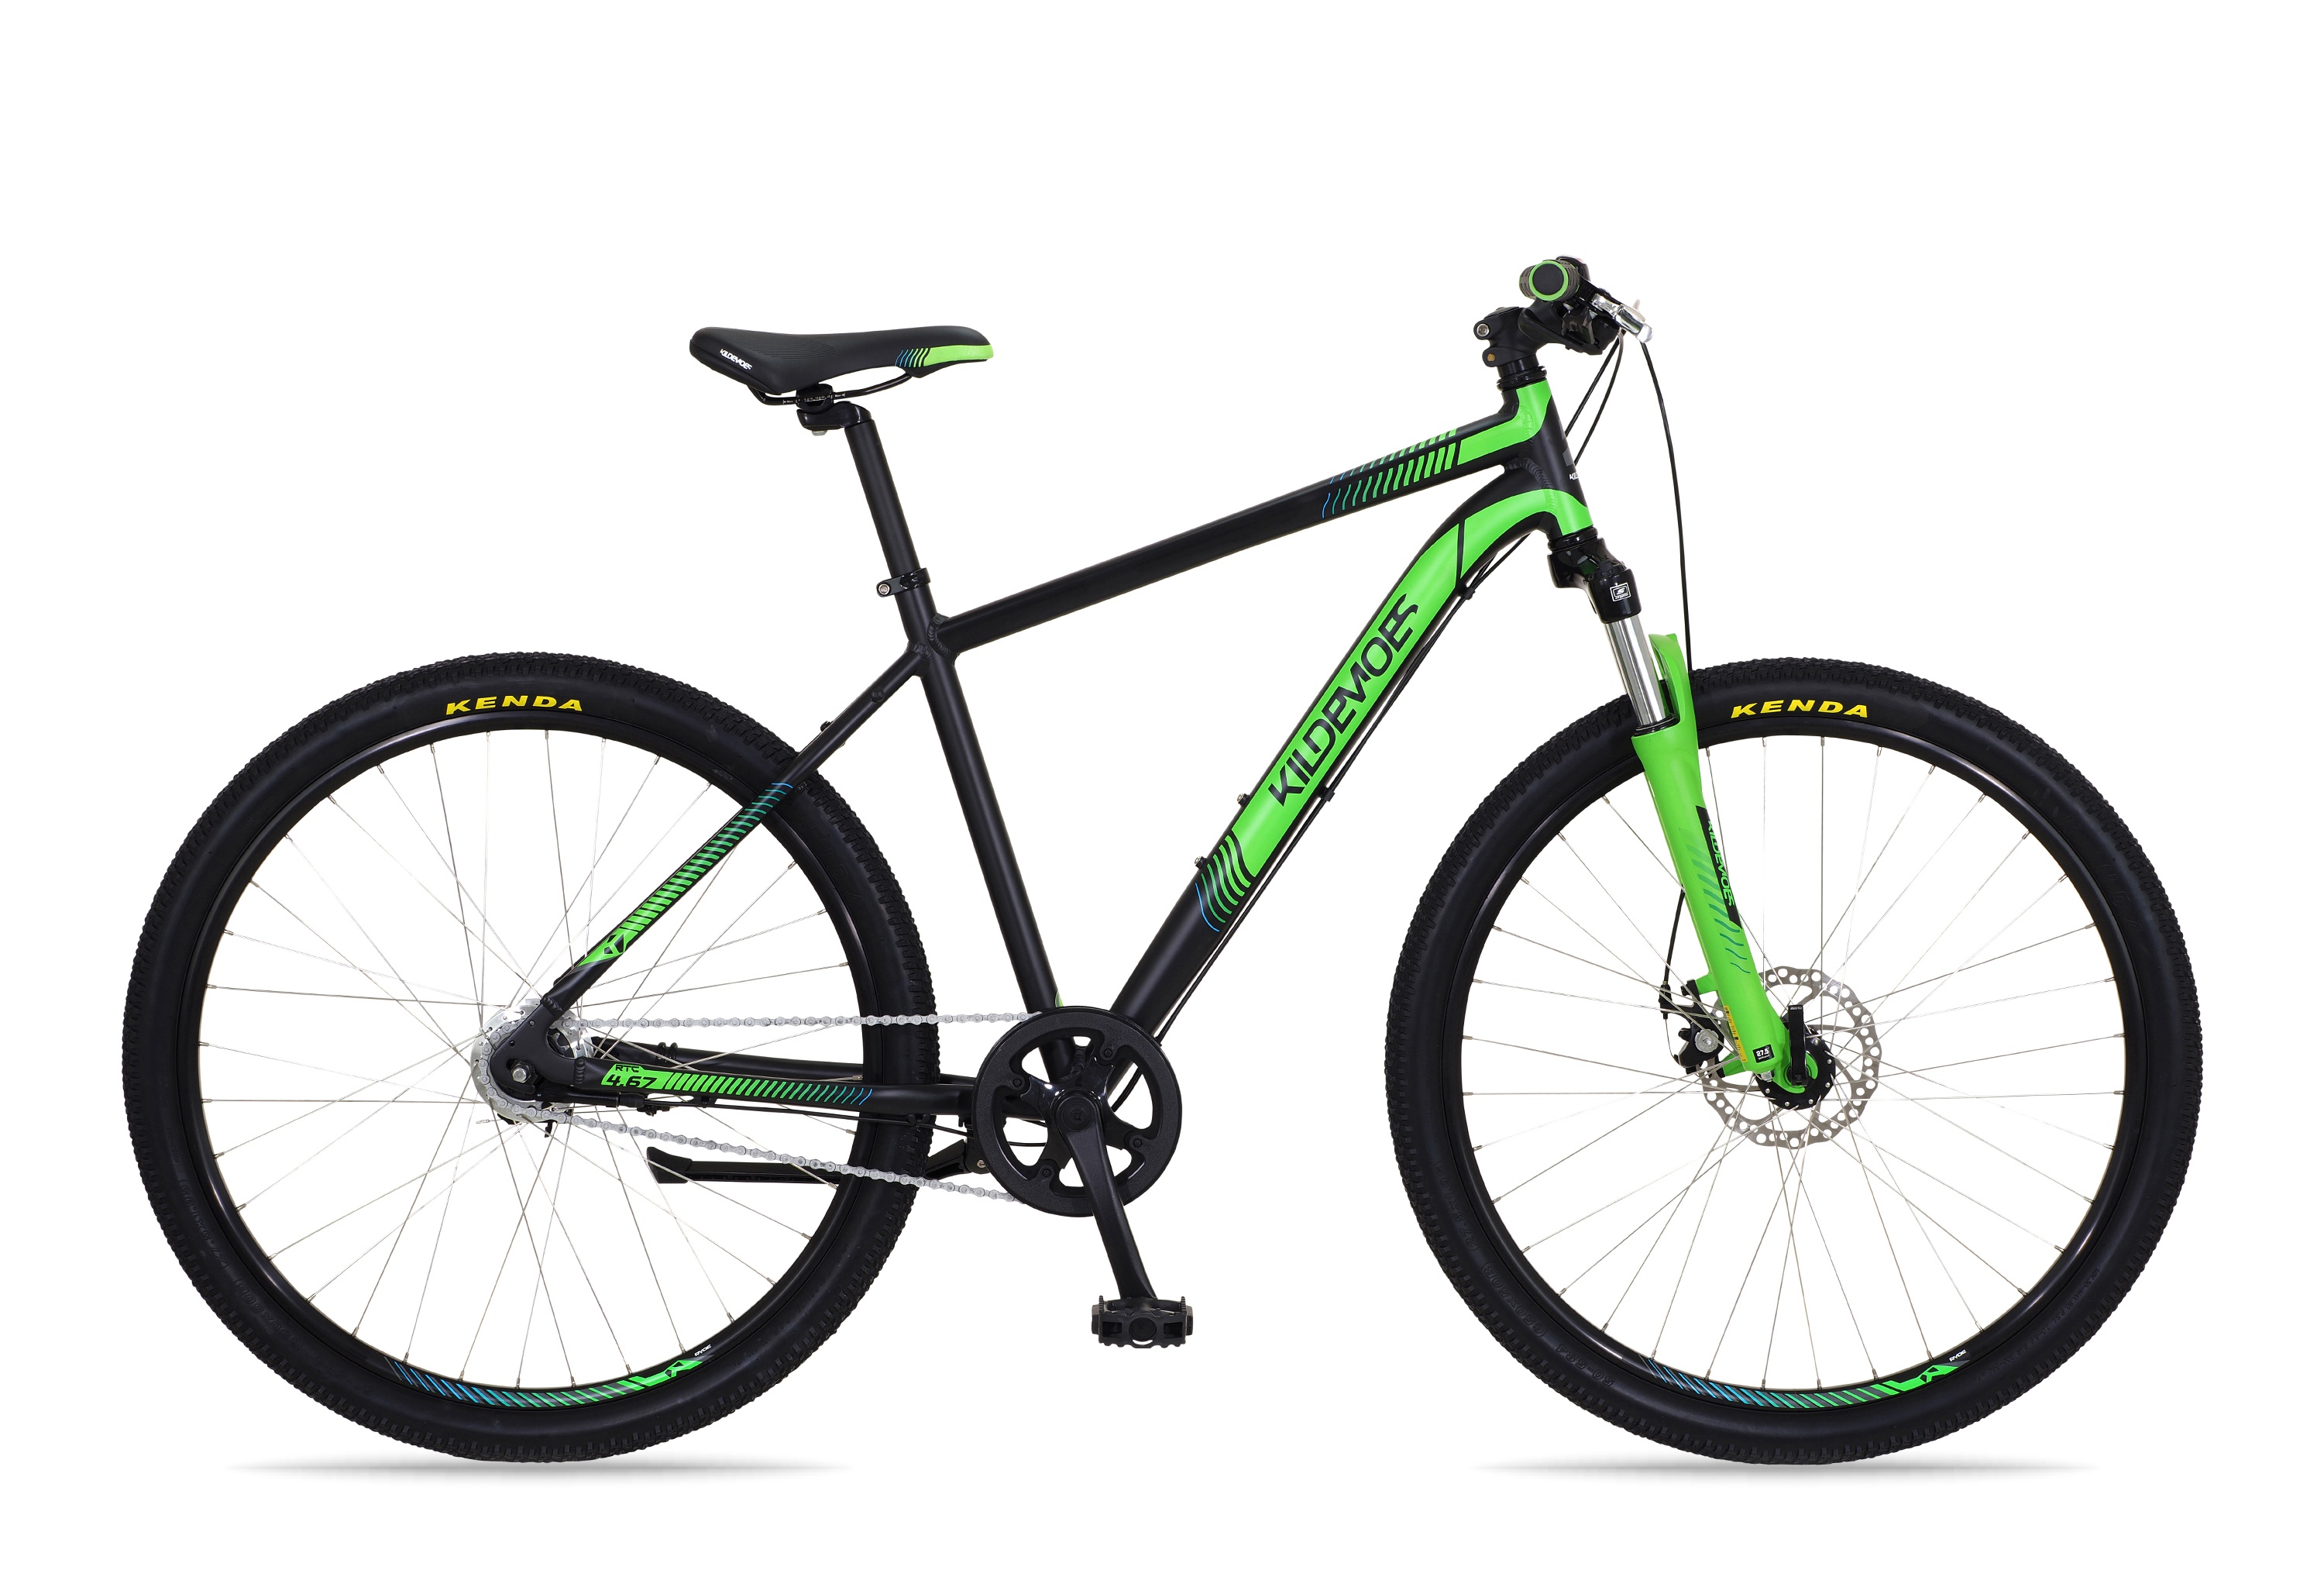 Cykler - Børnecykler - Kildemoes Intruder 27,5" 7g - Sort/grøn